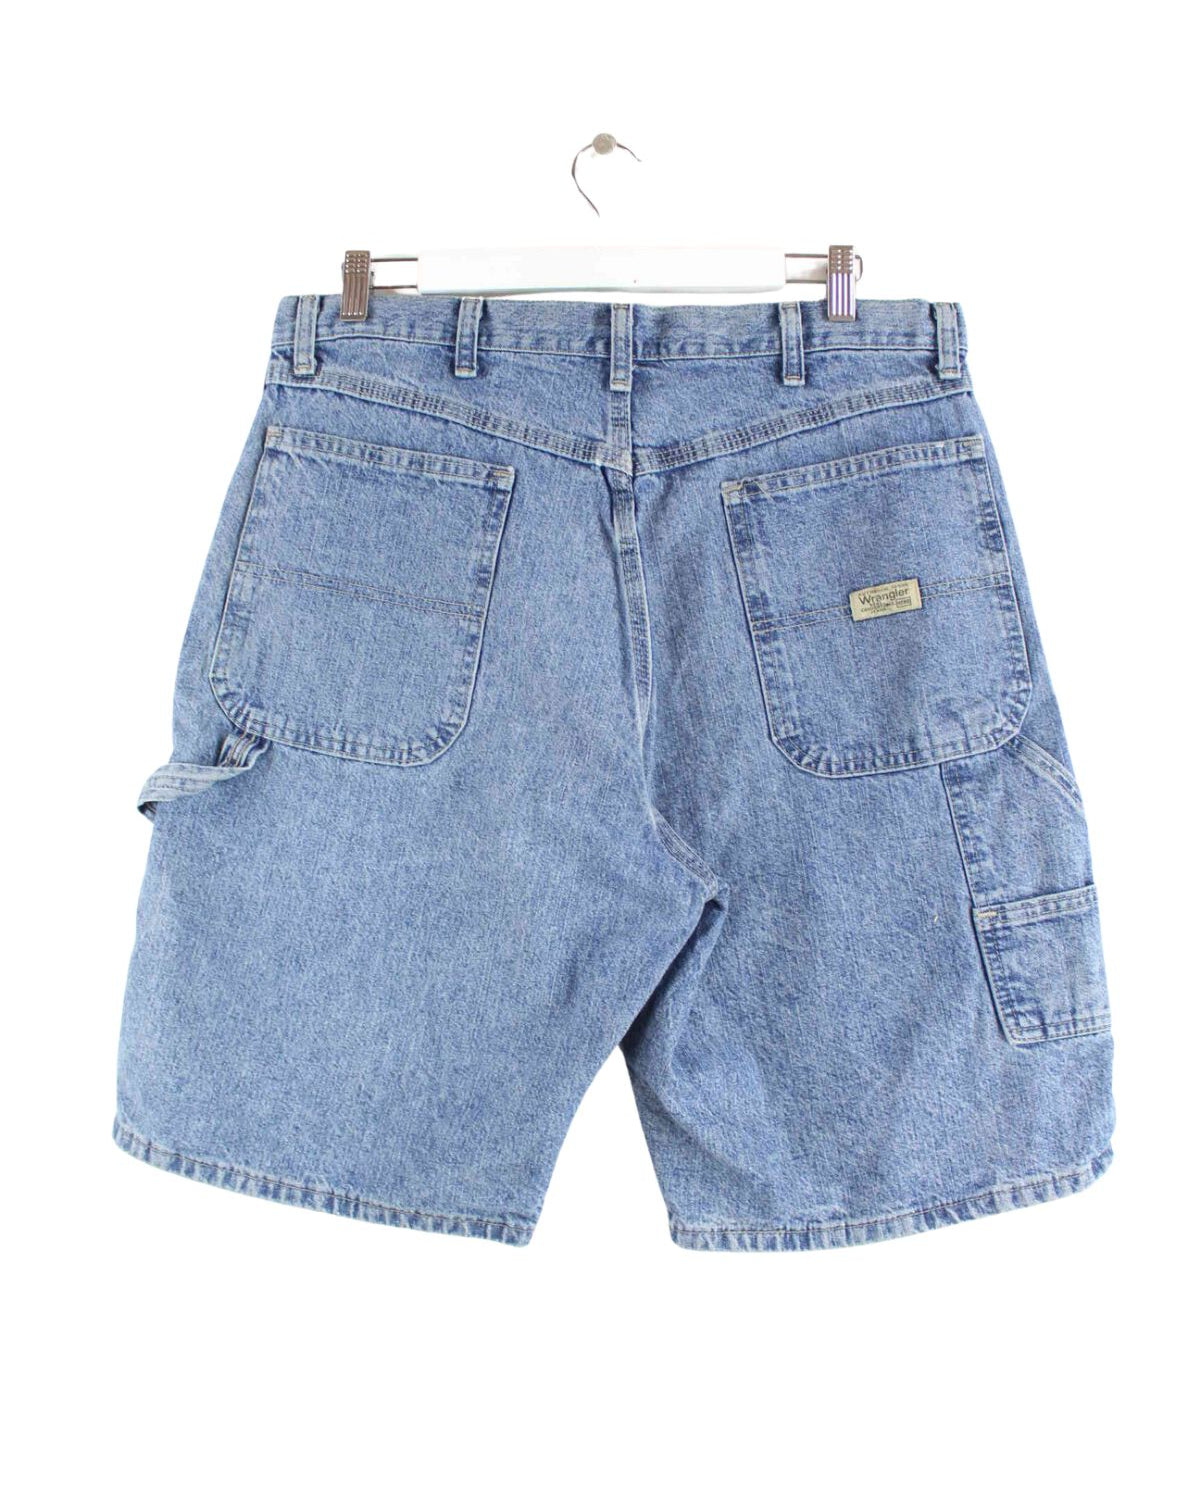 Wrangler Carpenter Workwear Shorts Blau W34 (back image)